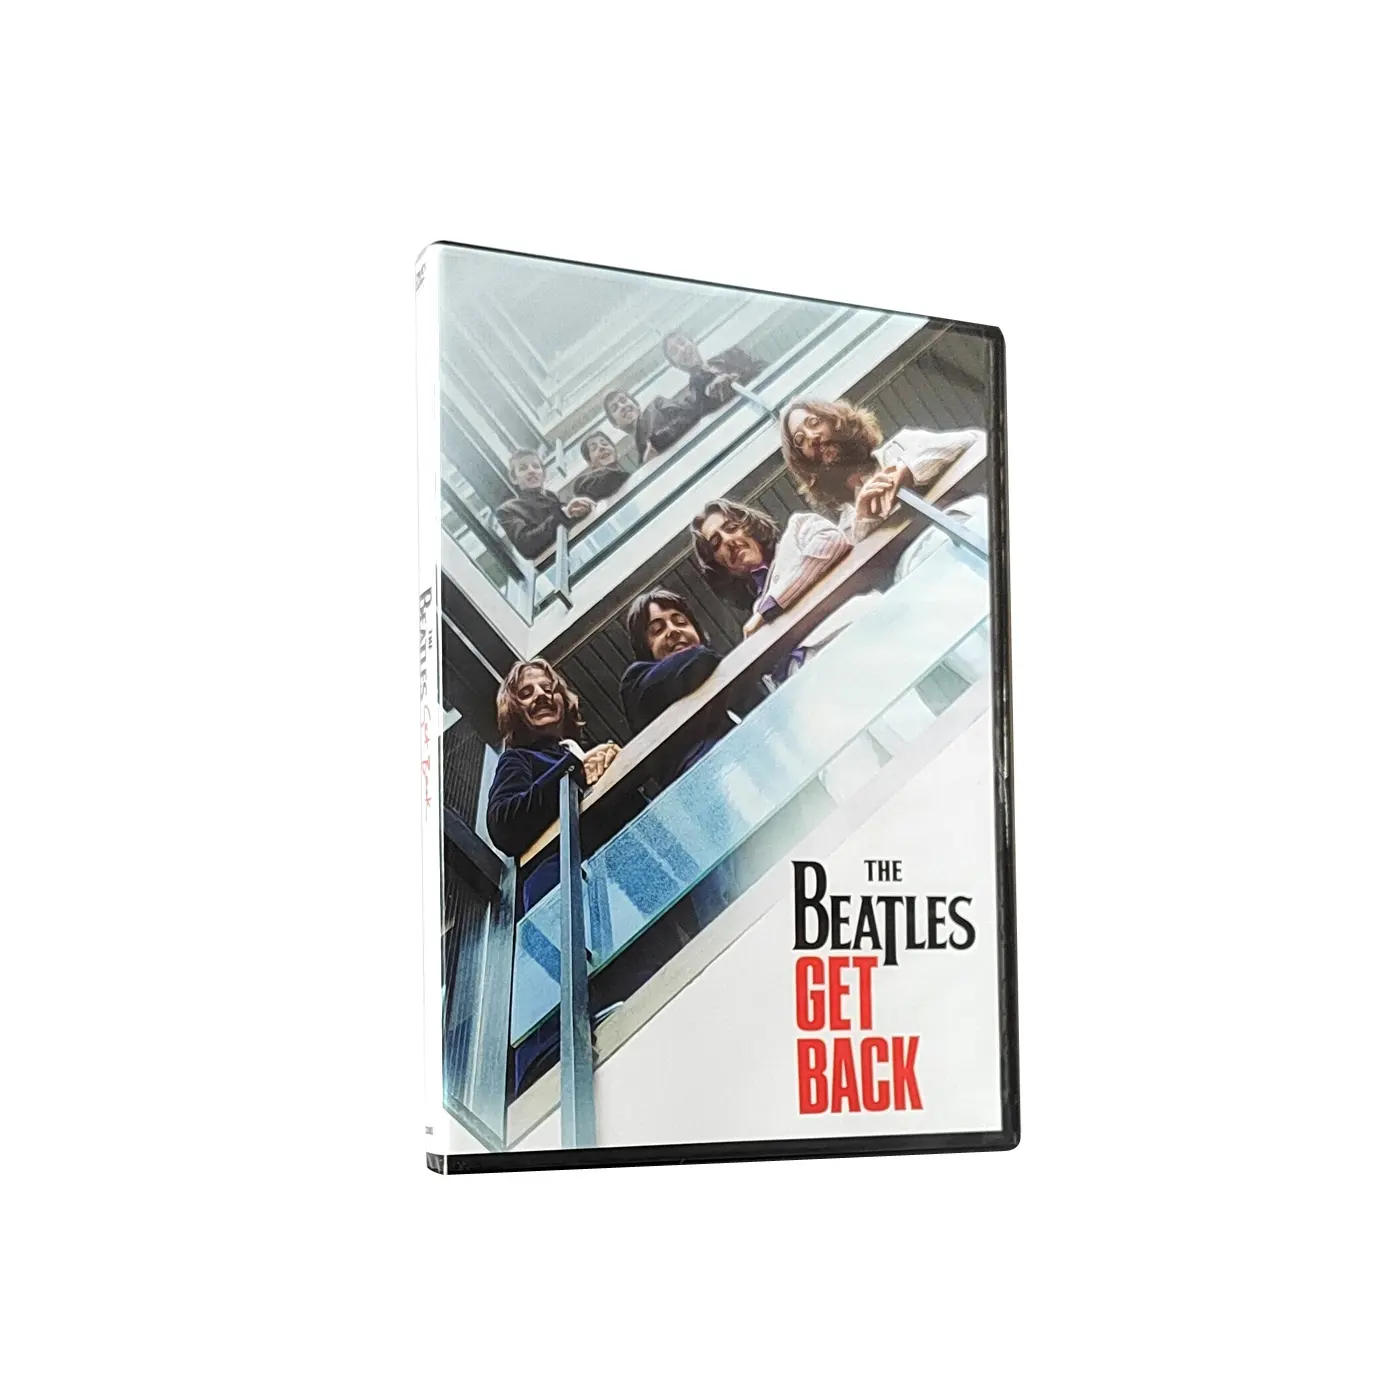 ซื้อชุดดีวีดีจากโรงงานจีนส่งฟรีฟิล์มภาพยนตร์การทำสำเนาดิสก์การพิมพ์รายการทีวี The Beatles กลับมา3แผ่น